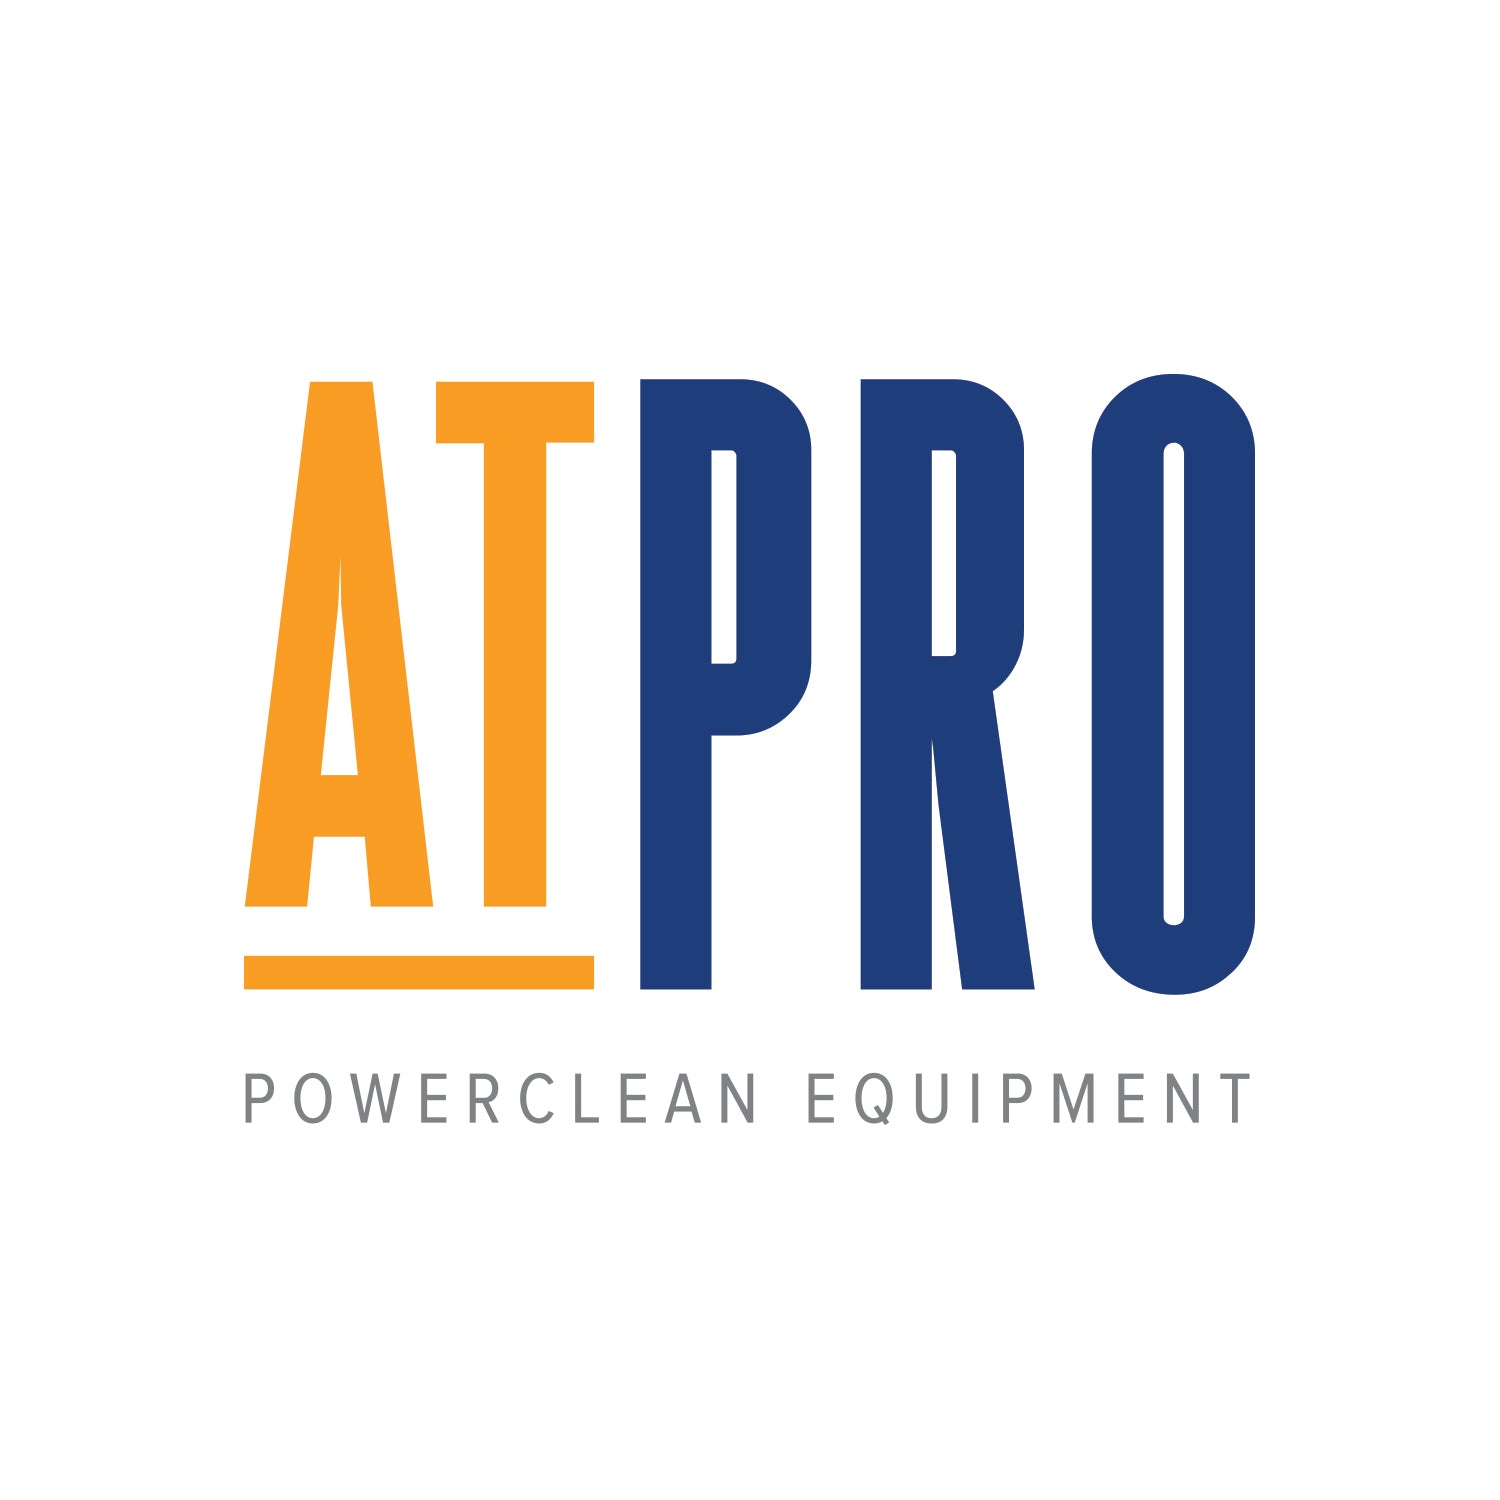 ATPRO Powerclean Equipment - Pressure Washers Online